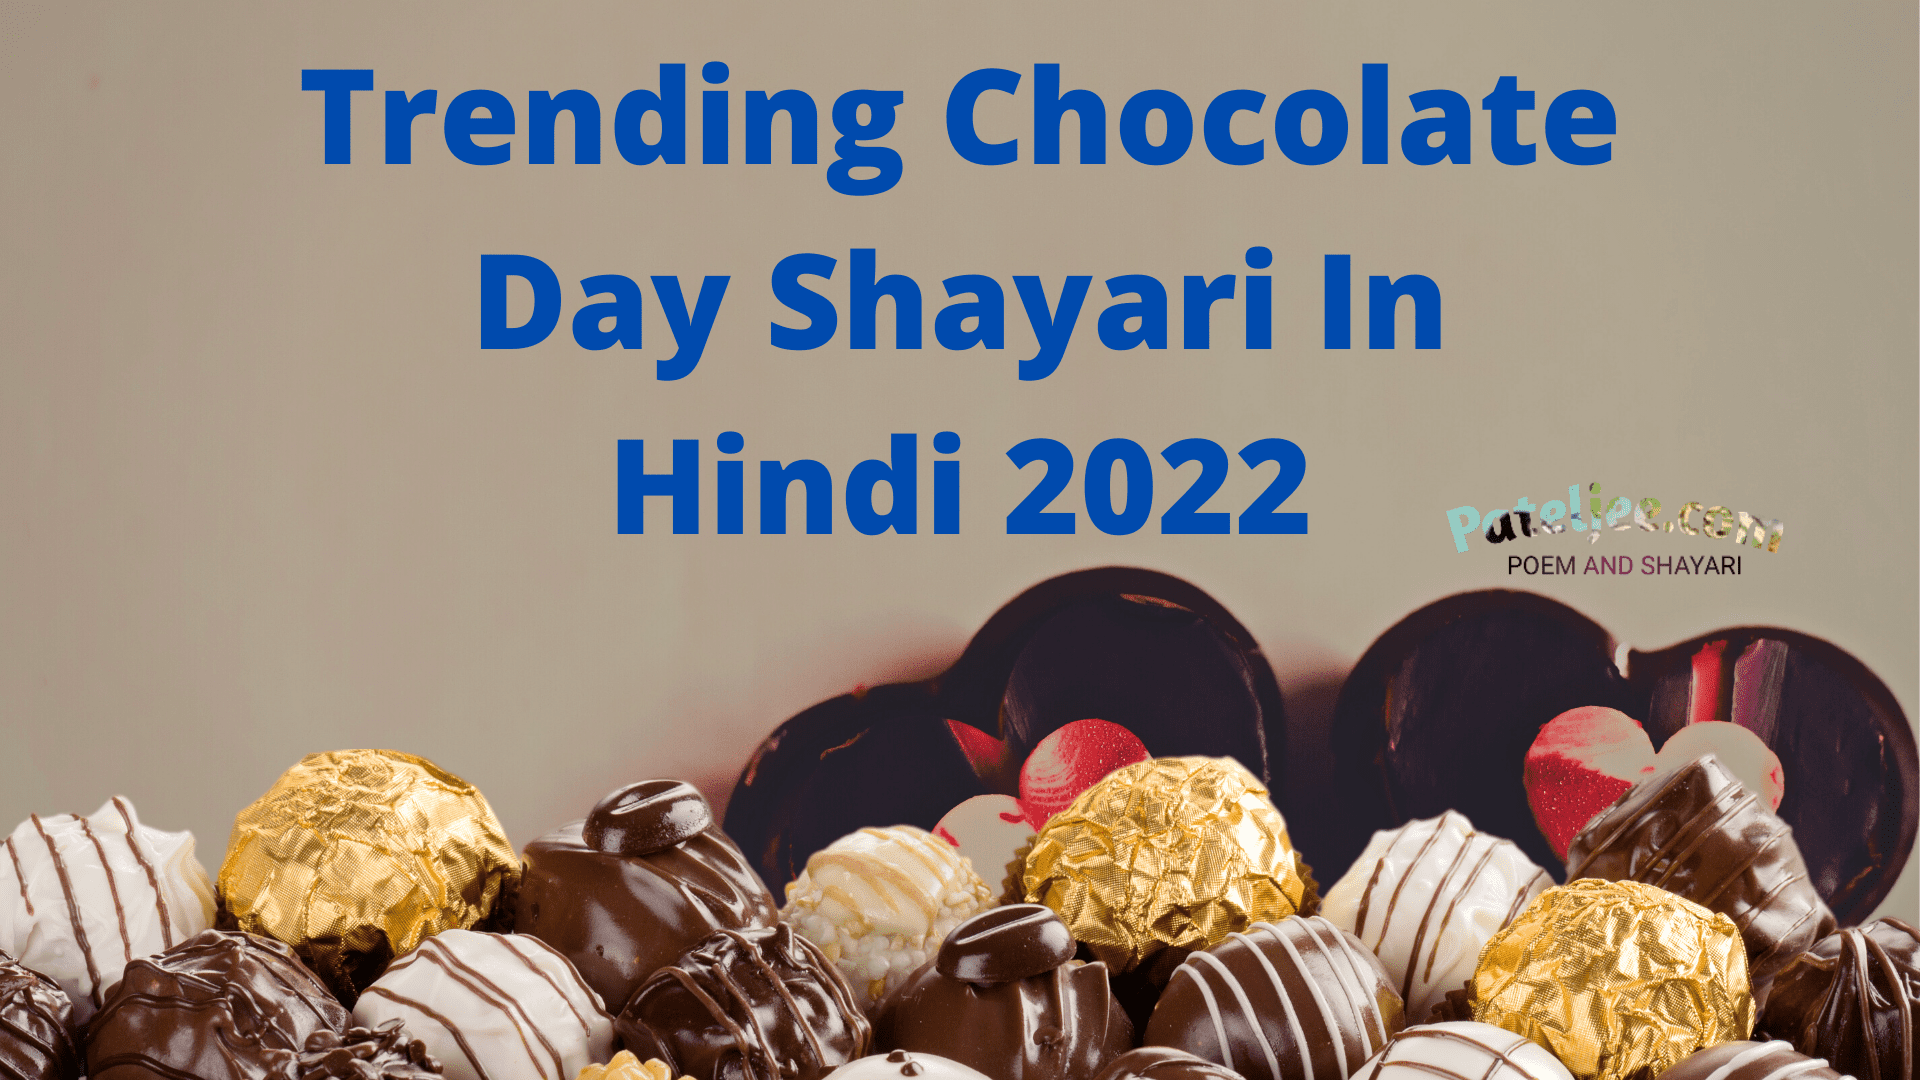 Trending Chocolate Day Shayari In Hindi 2022